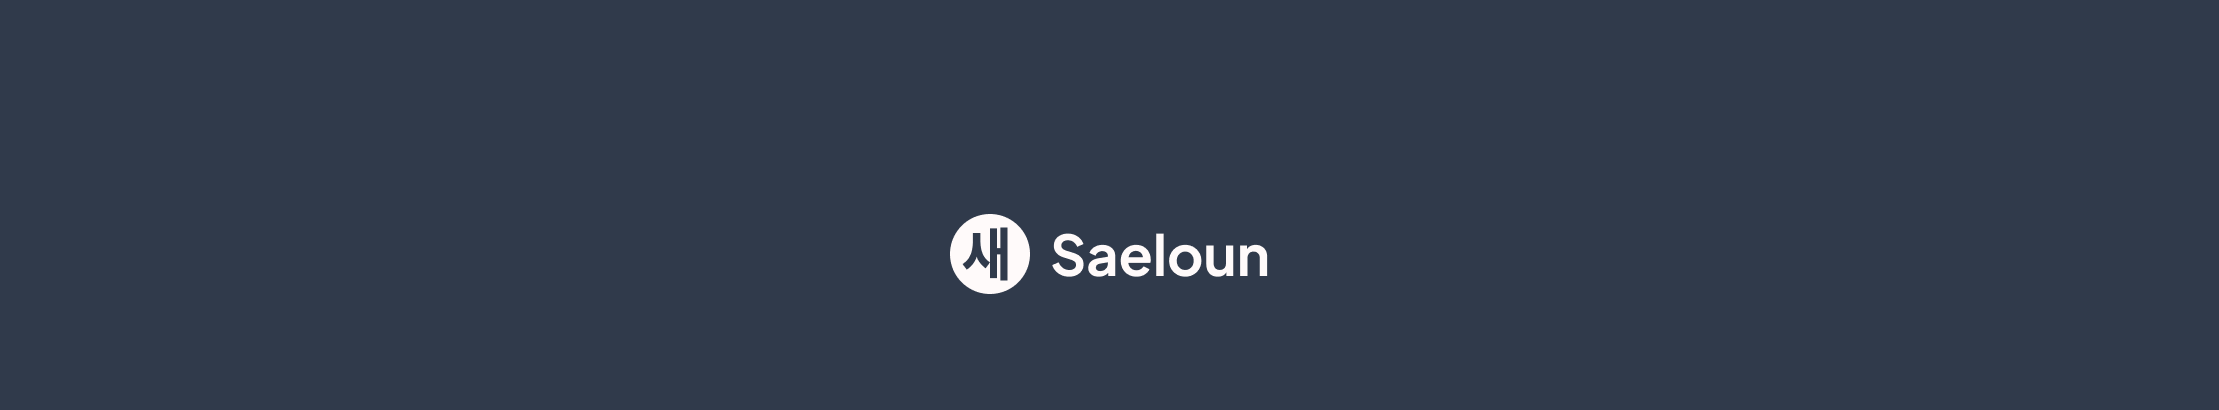 Saeloun Technologiess profilbanner